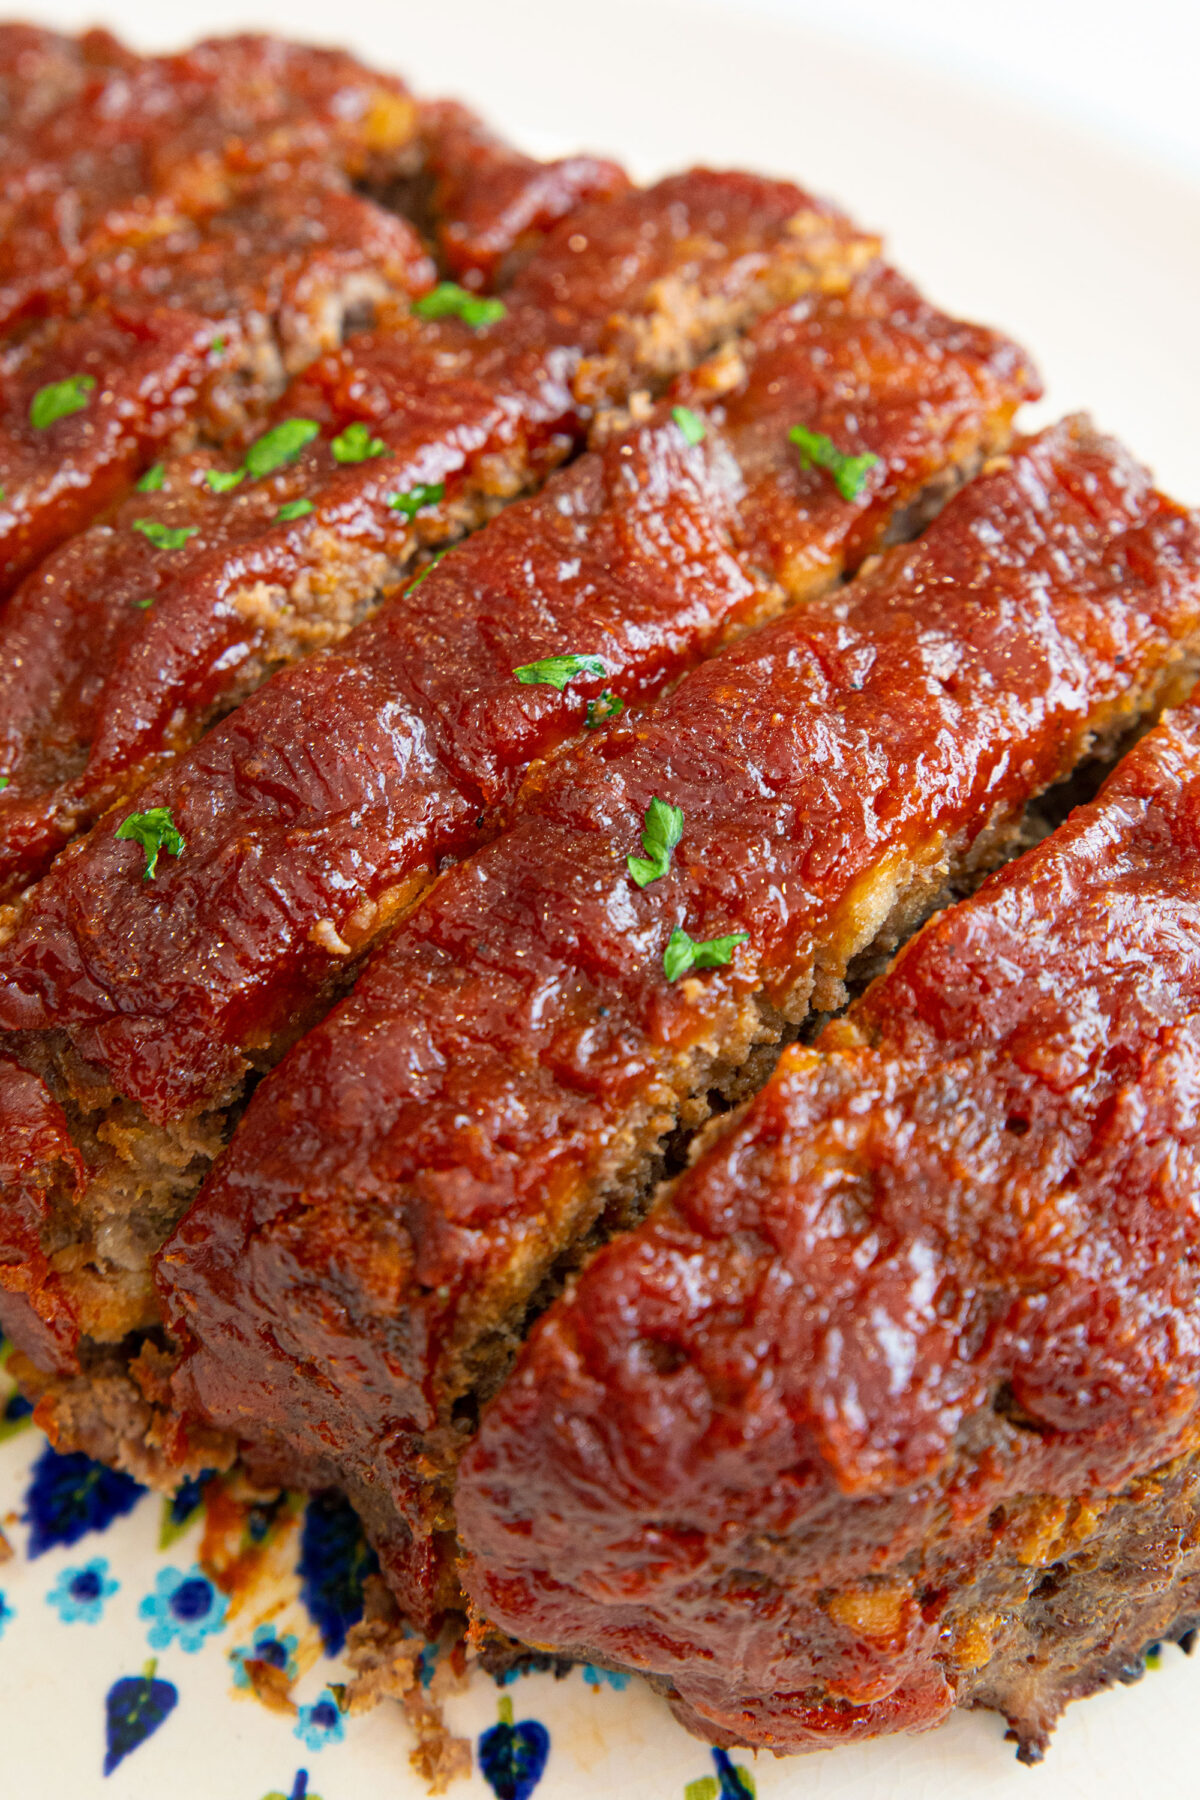 meatloaf sauce on top of sliced meat loaf.